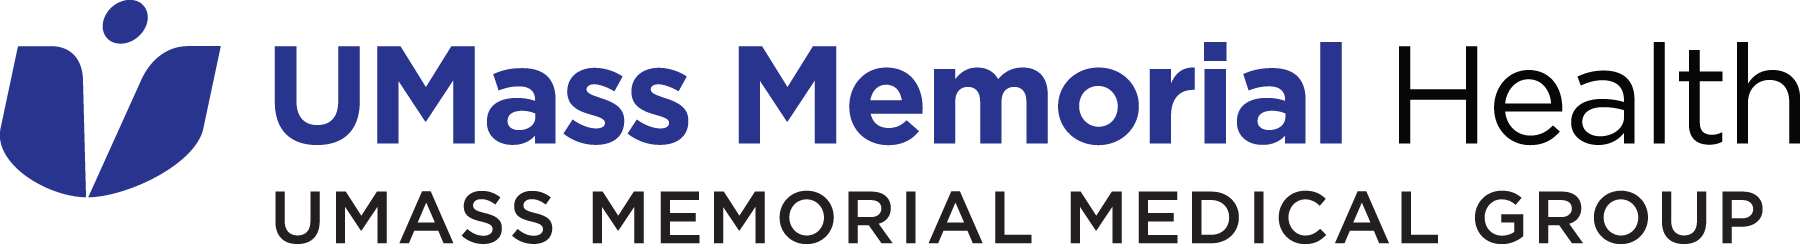 UMass Memorial Medical Group Logo